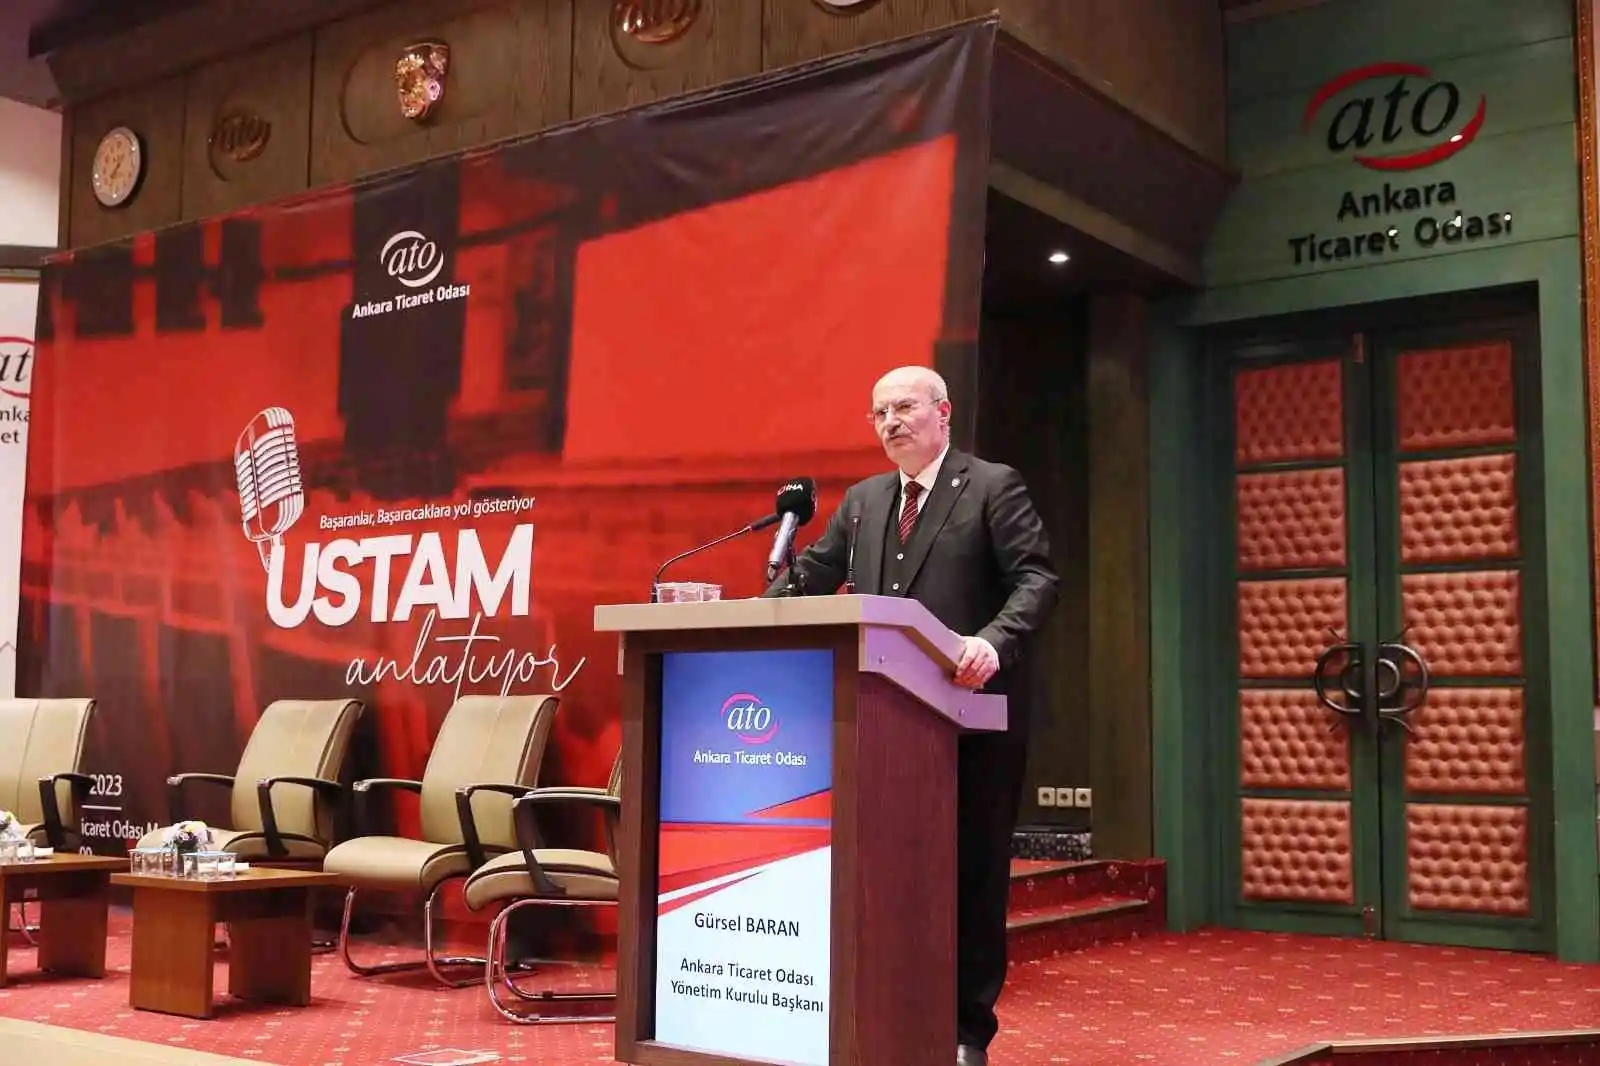 ATO Başkanı Baran: “Ankara Ticaret Odasının görevi sektördeki yaşanan sıkıntıları çözmektir”
